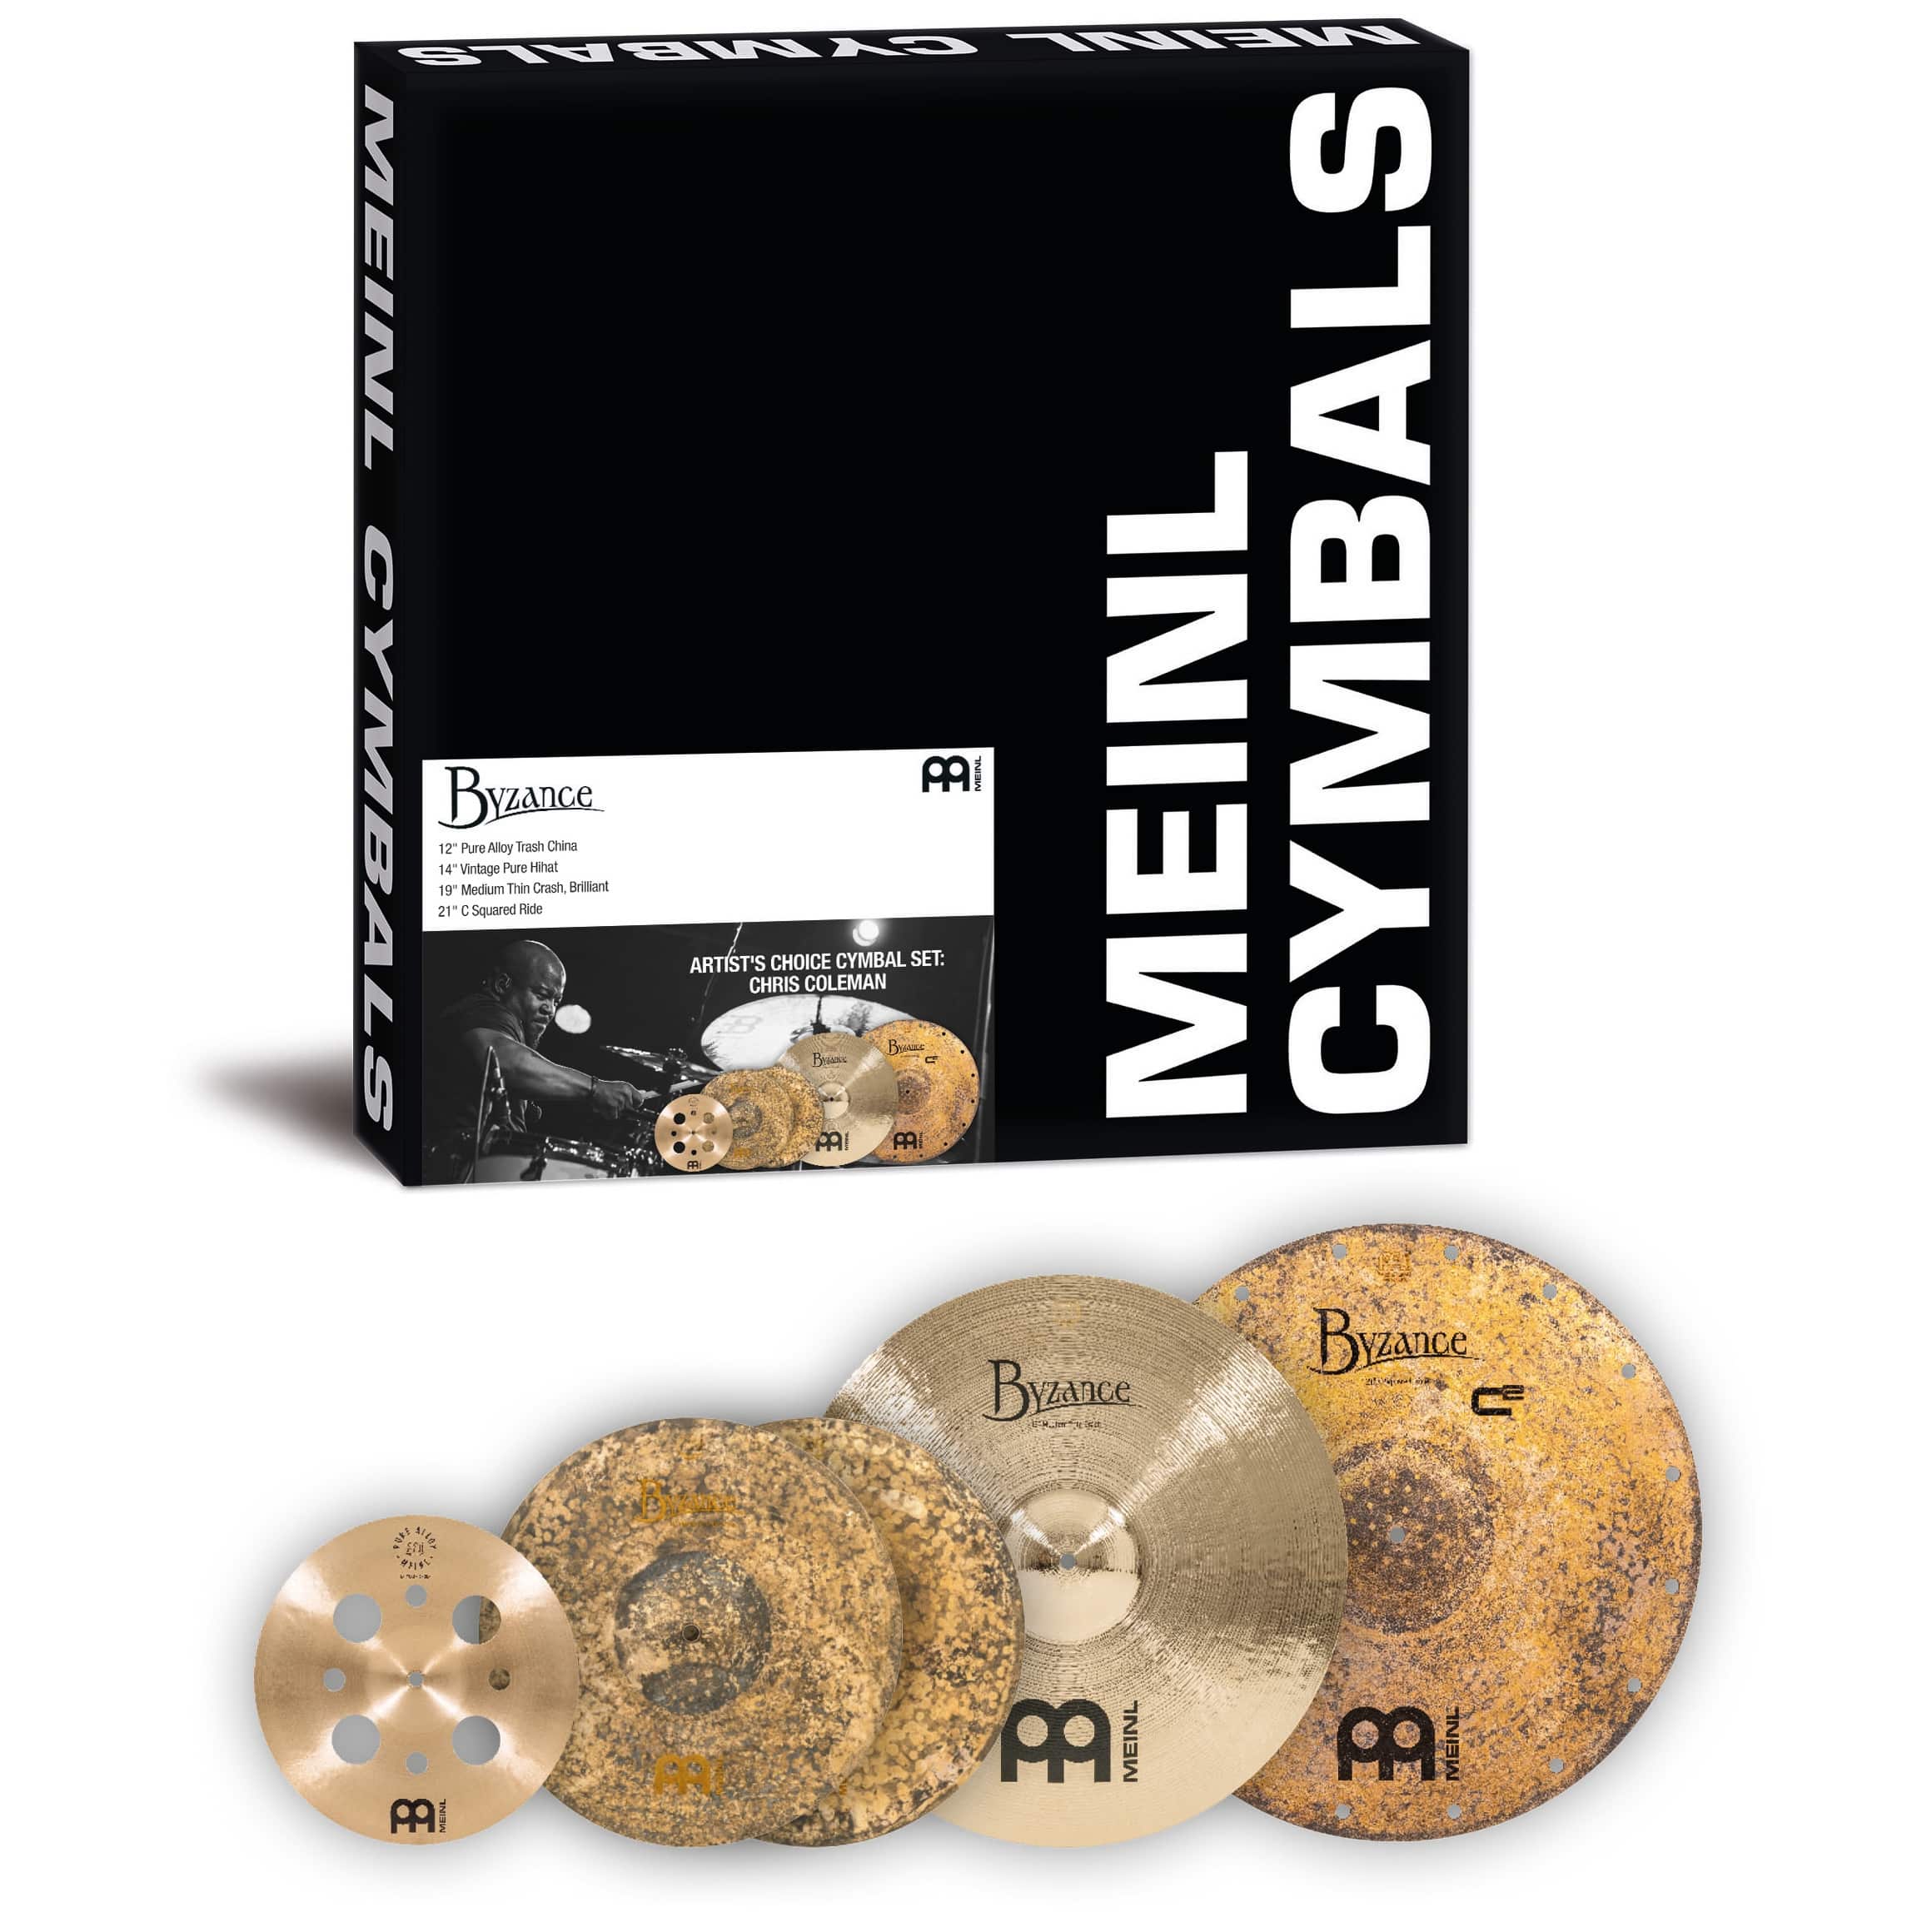 Meinl Cymbals A-CS5 - Byzance Artist's Choice Cymbal Set: Chris Coleman